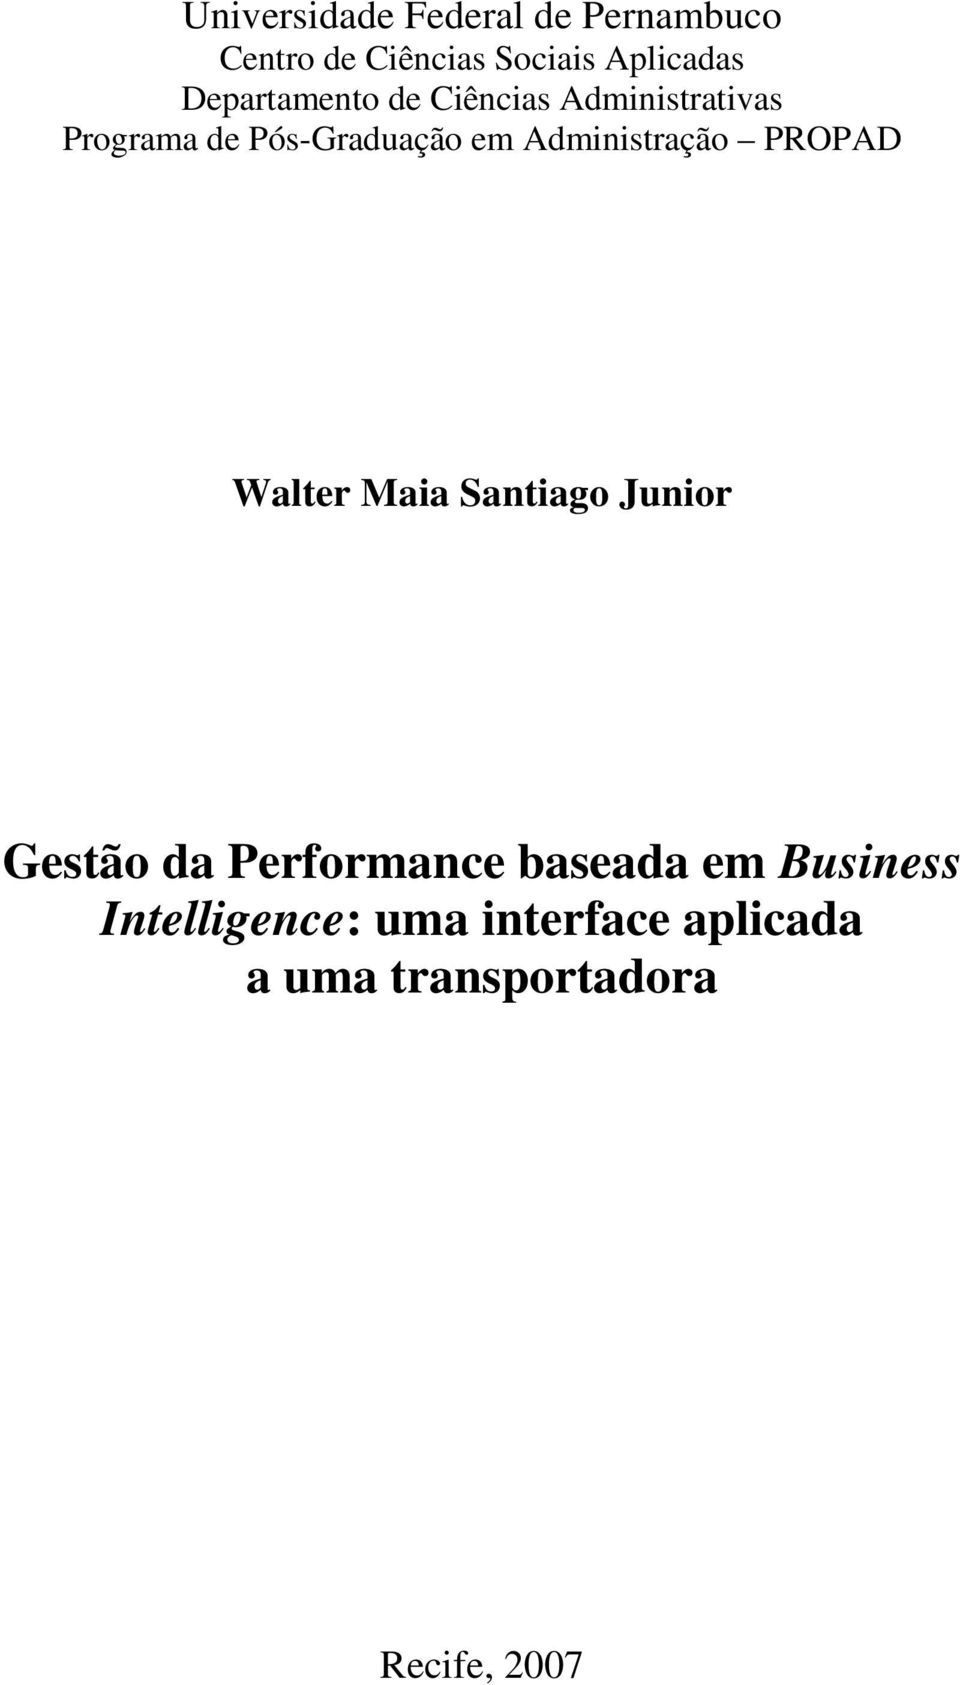 Administração PROPAD Walter Maia Santiago Junior Gestão da Performance